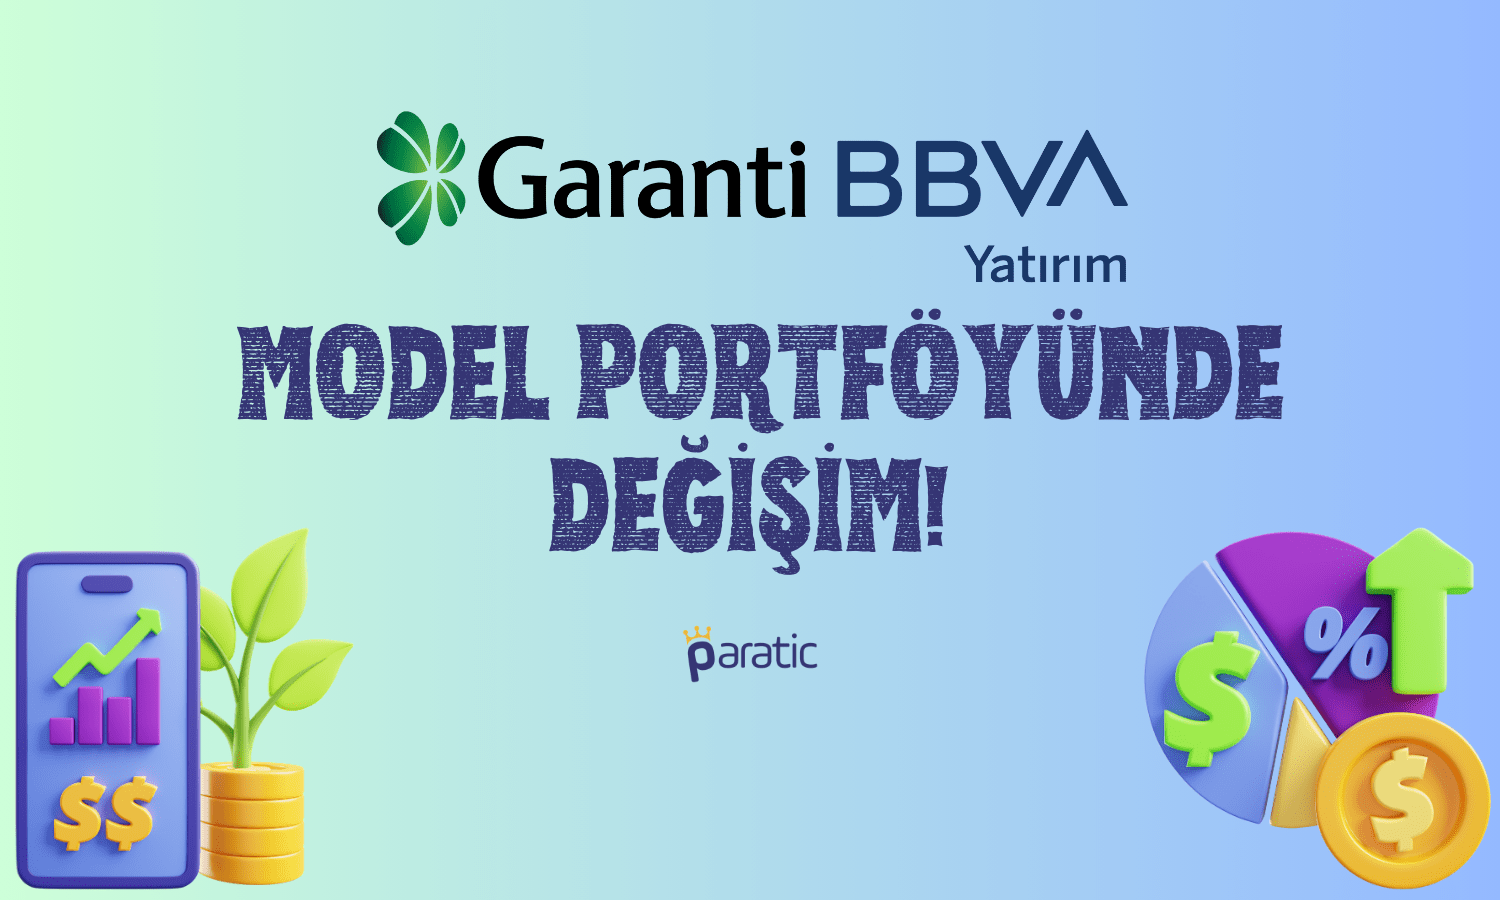 Garanti’nin Model Portföyünde 2 Büyük Değişim!